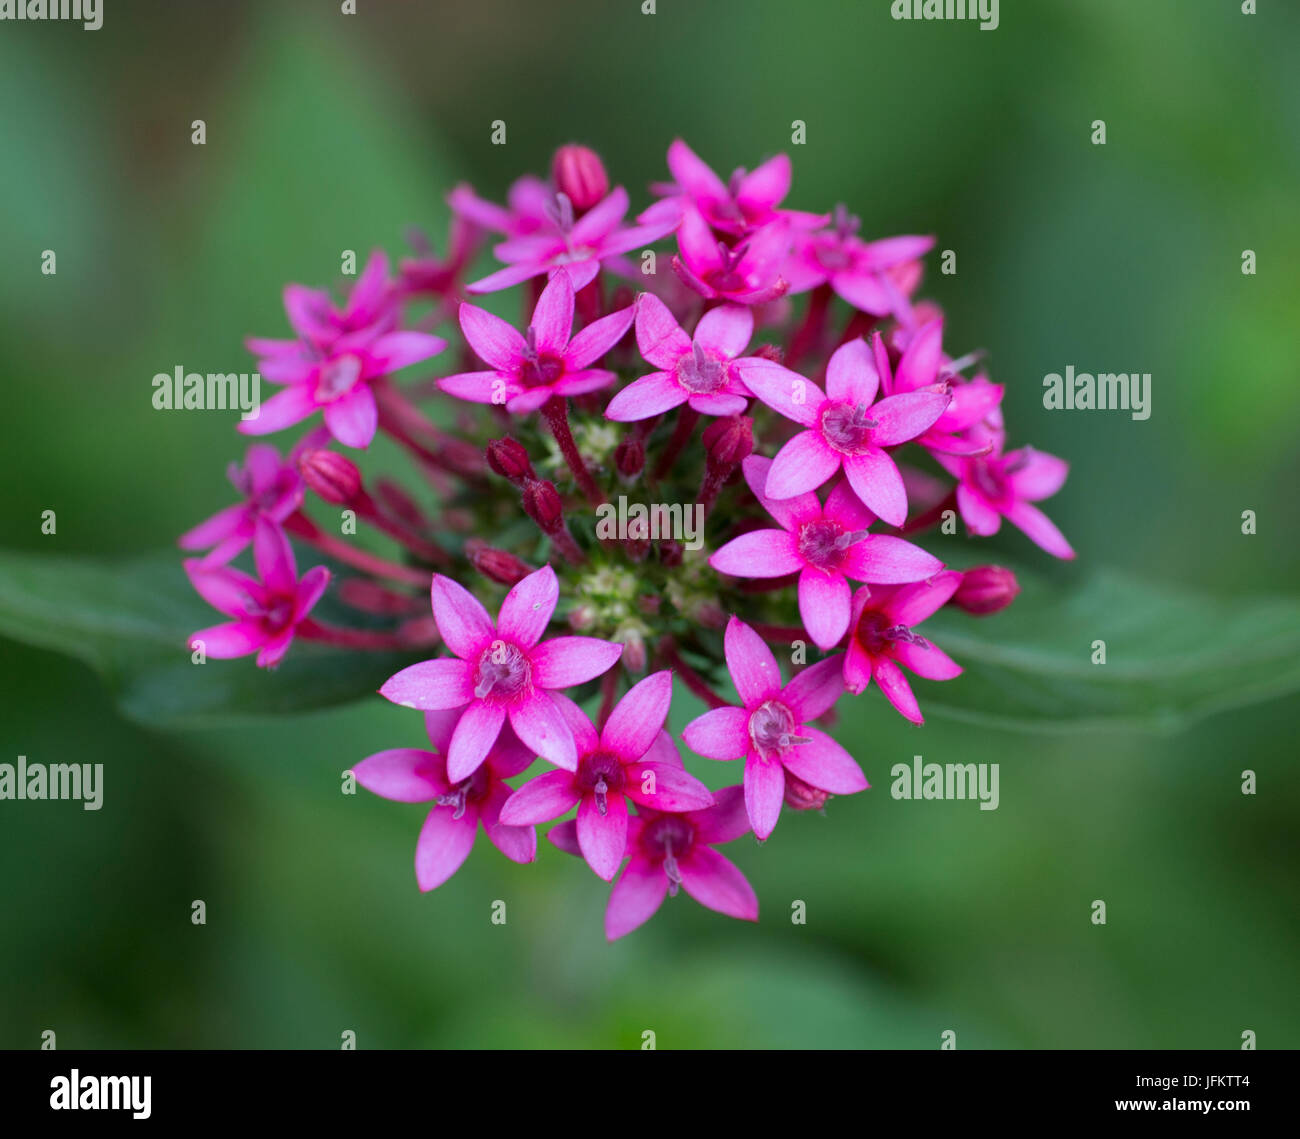 Egyptian Star Cluster Flower Stock Photo